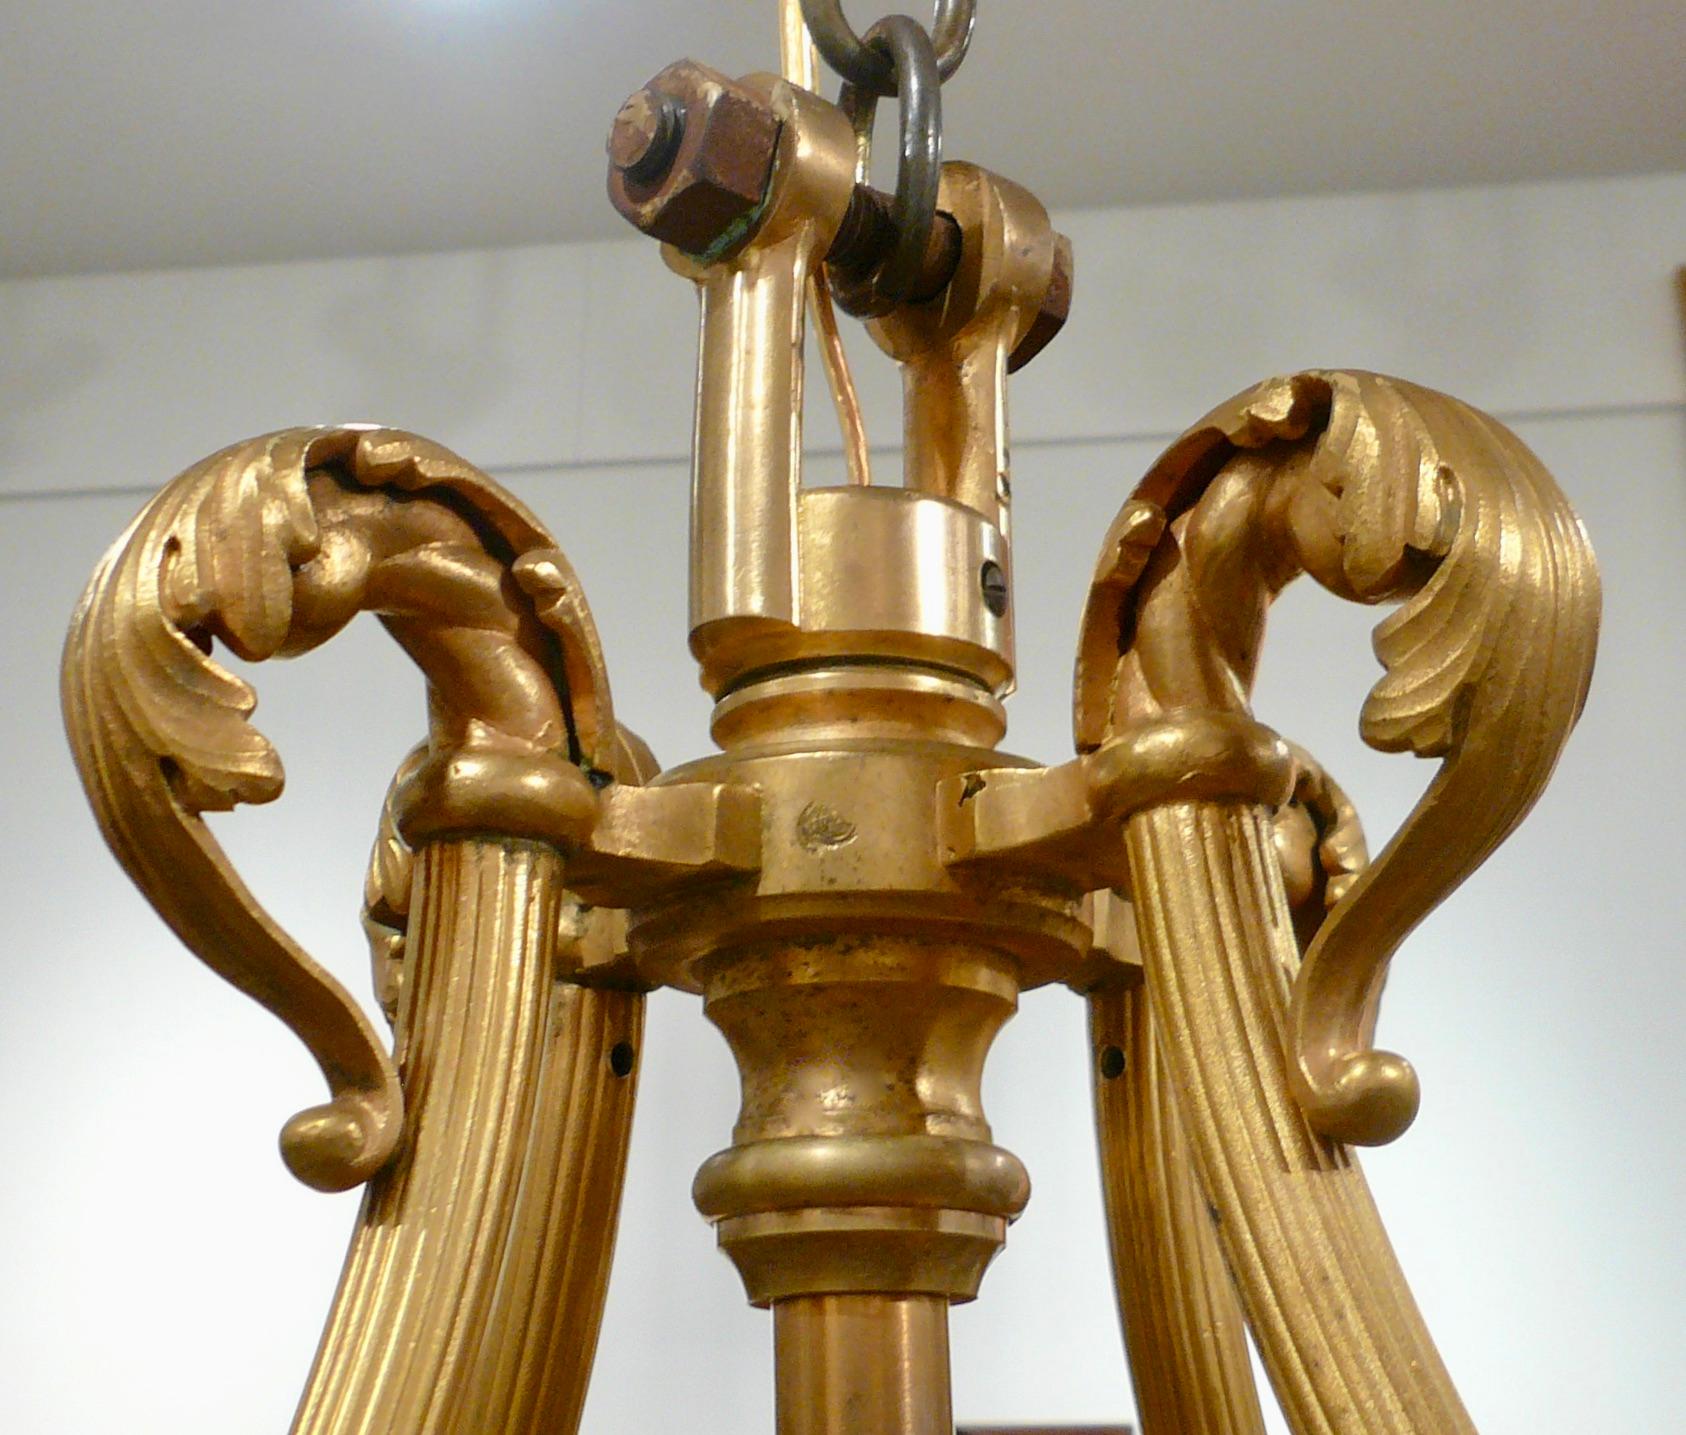 Dieser ikonische, signierte Baccarat Crinoline-Kronleuchter aus dem Jahr 1895 ist handgefertigt und besteht vollständig aus Bleikristall. Die große dreizehnflammige Leuchte hat eine ovale Form und ist ideal für eine Eingangshalle, über einem